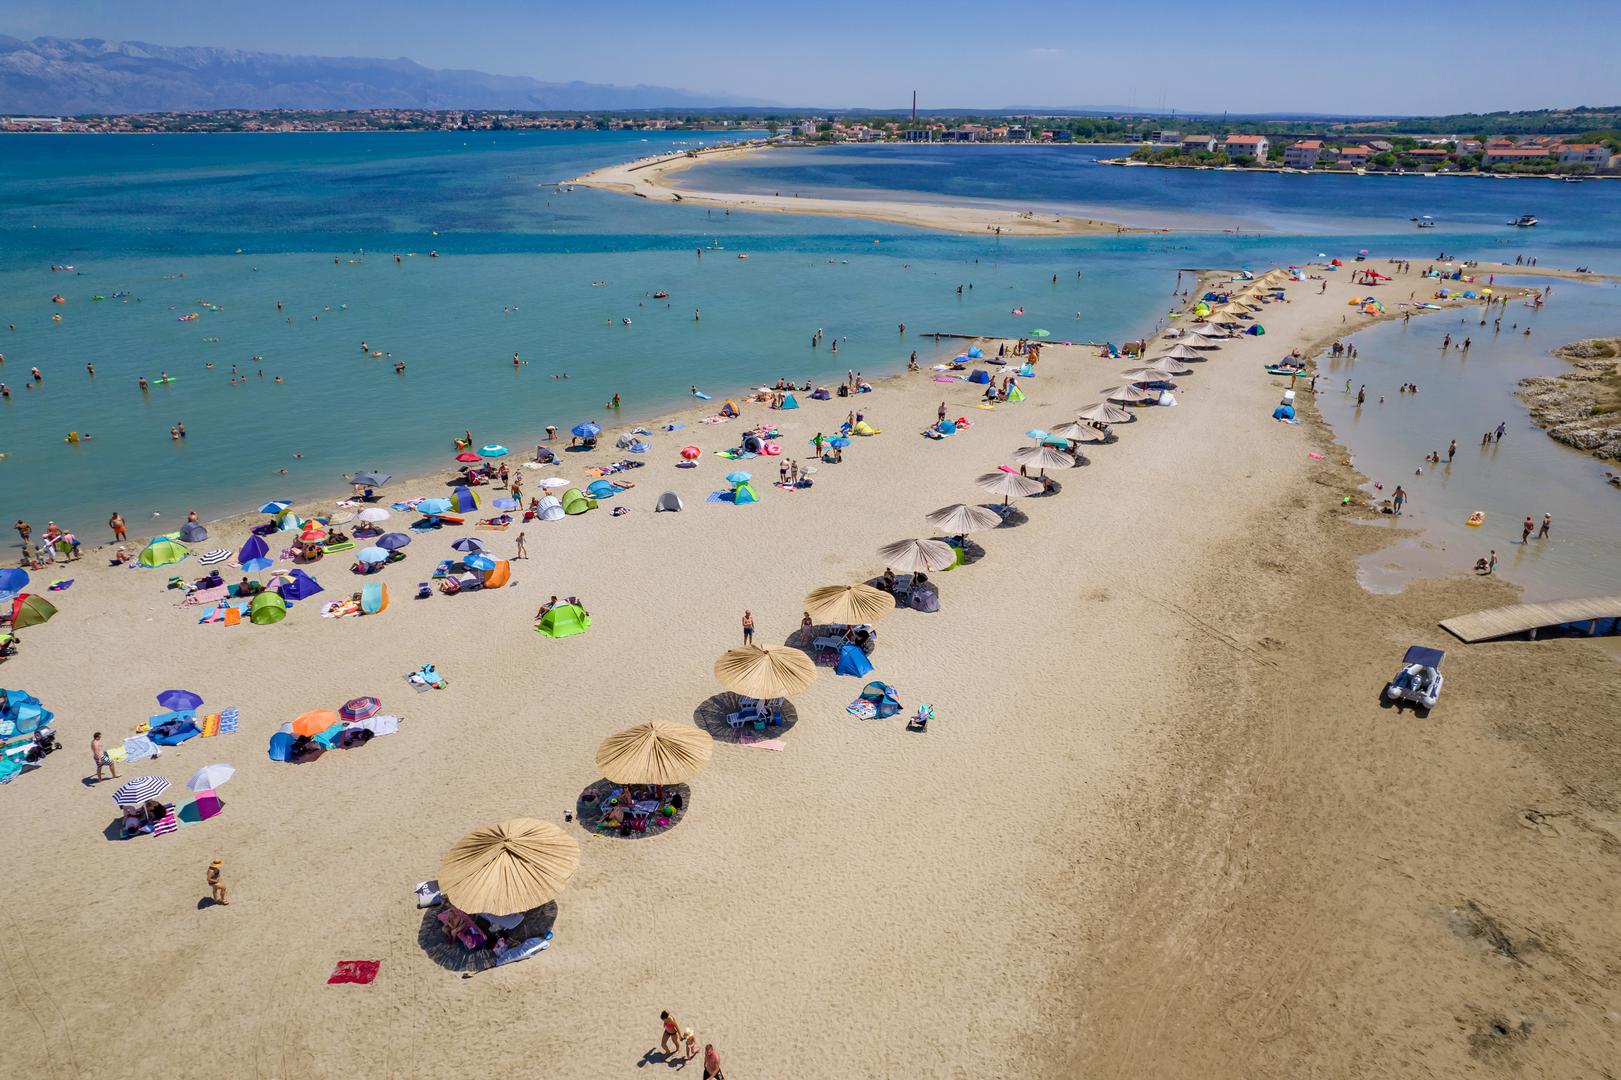 Kraljičina plaža po mnogočemu je jedinstvena. Najduža je hrvatska pješčana plaža, a njezino je ime povezano s legendom.